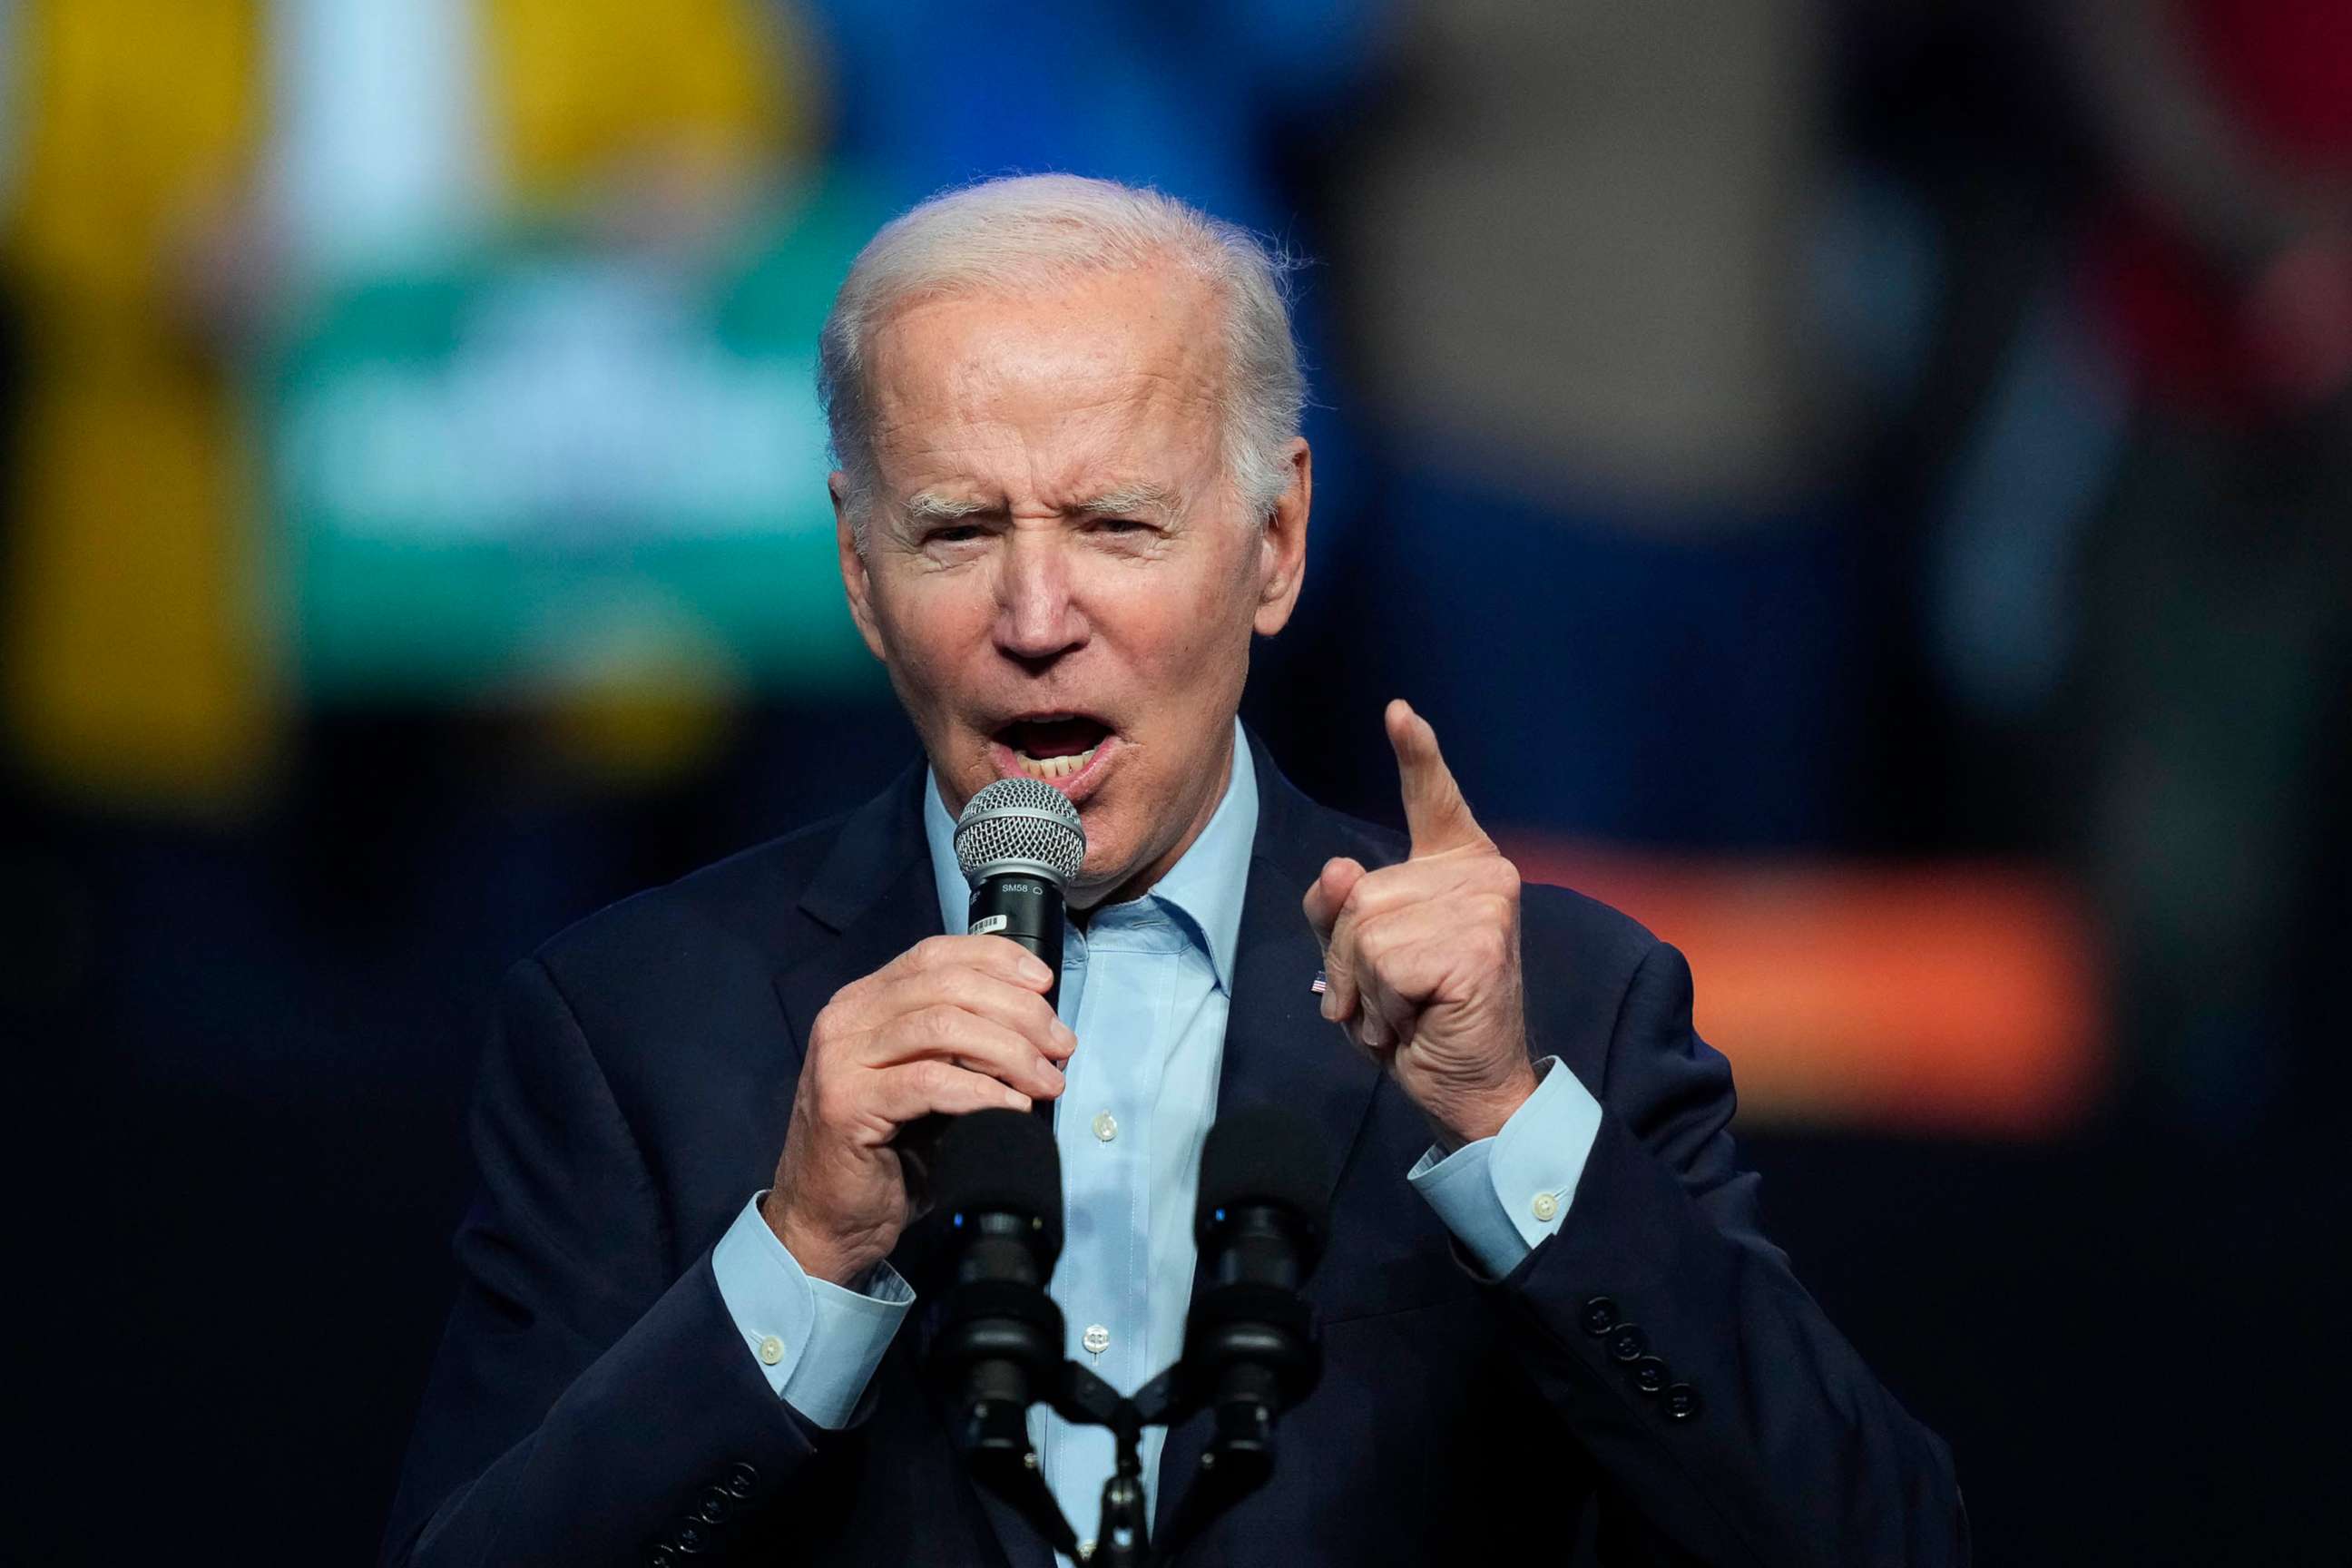 President Joe Biden speaks at a campaign rally, Nov. 5, 2022, in Philadelphia.